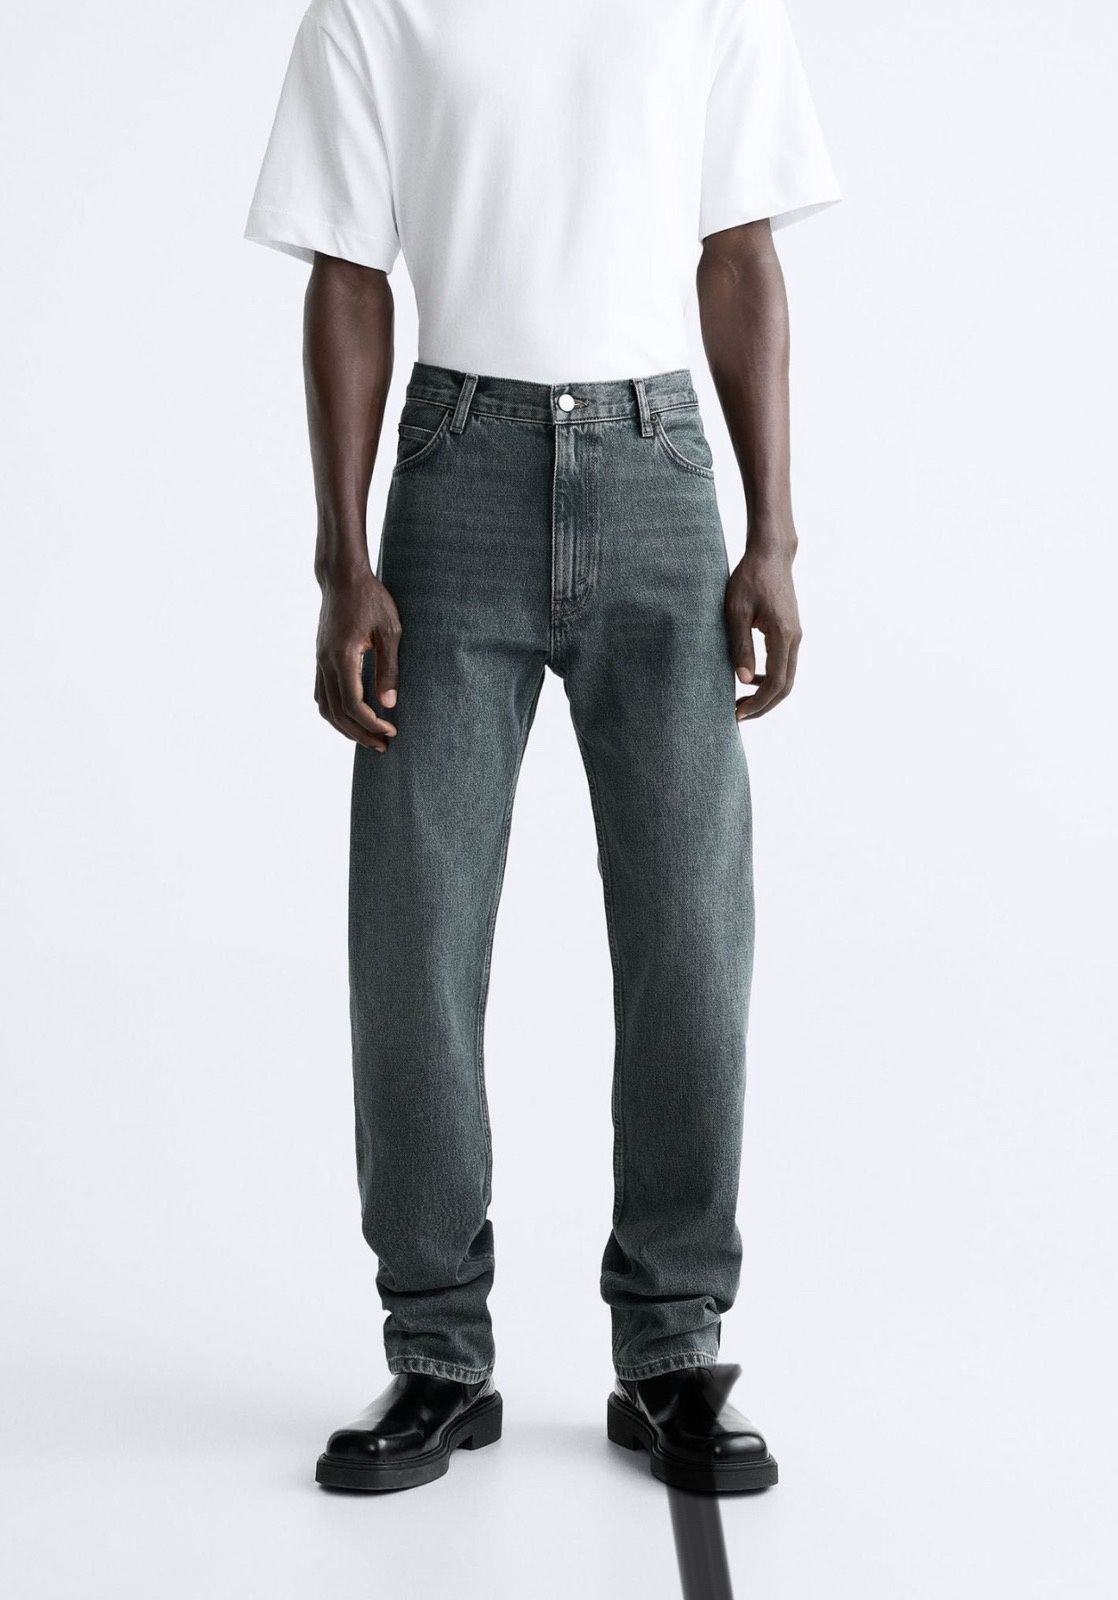 Чоловічі джинси від Zara